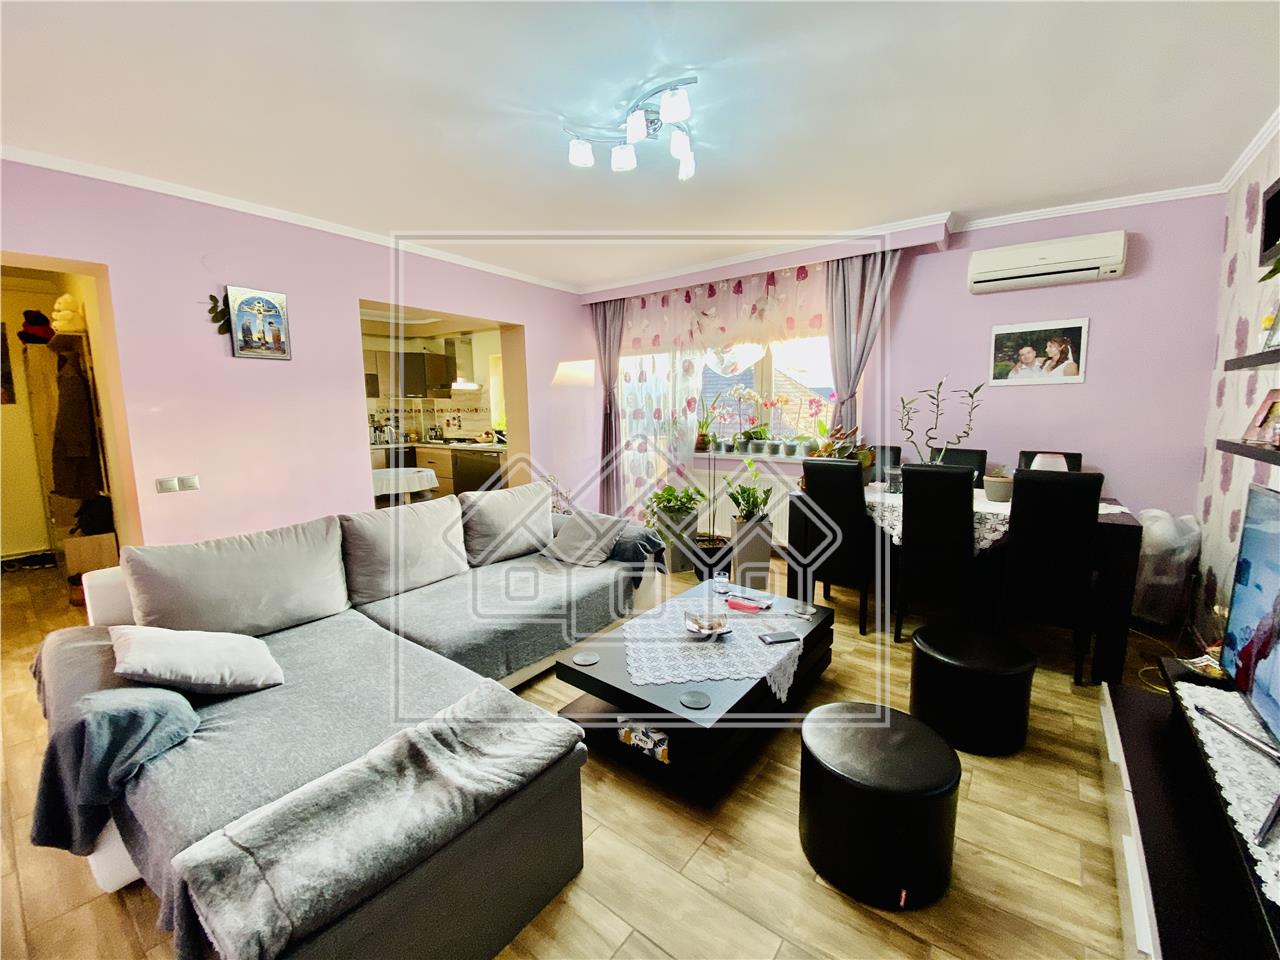 3 Zimmer Wohnung kaufen in Sibiu - 95 qm Nutzfl?che -